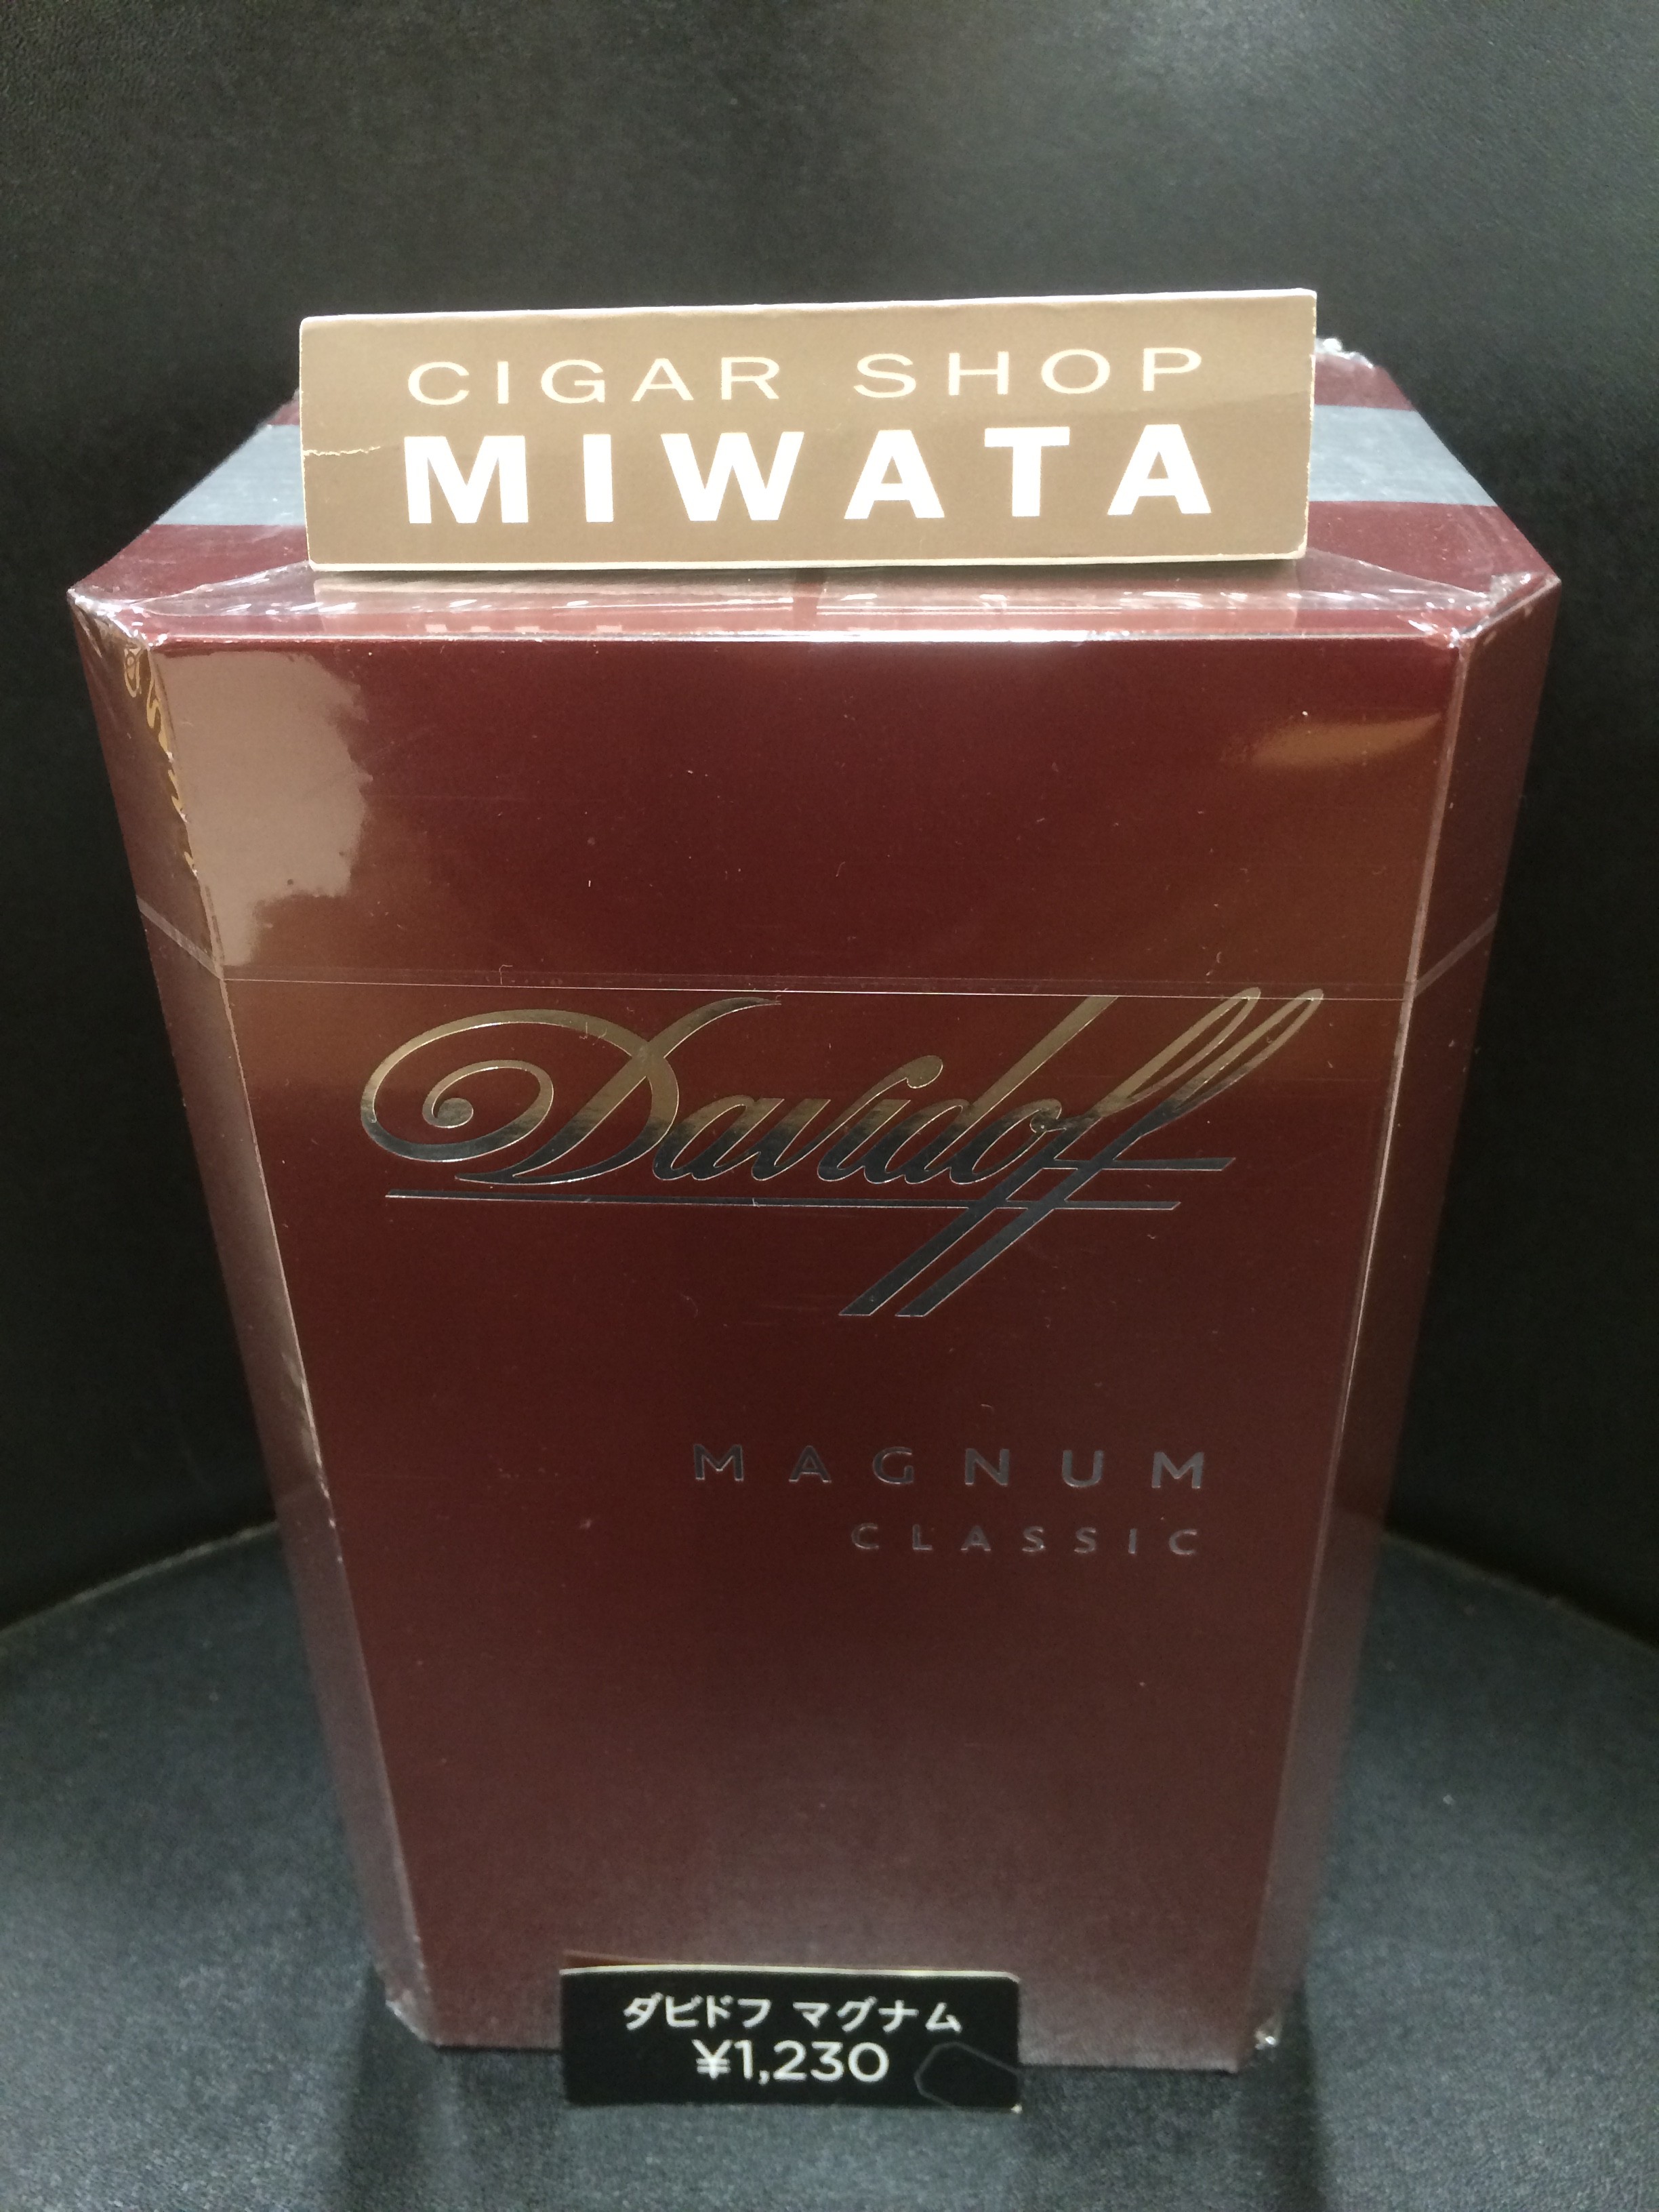 タバコ ダビドフ 「ダビドフ」がパイプタバコ発売45周年を記念した限定商品を発売